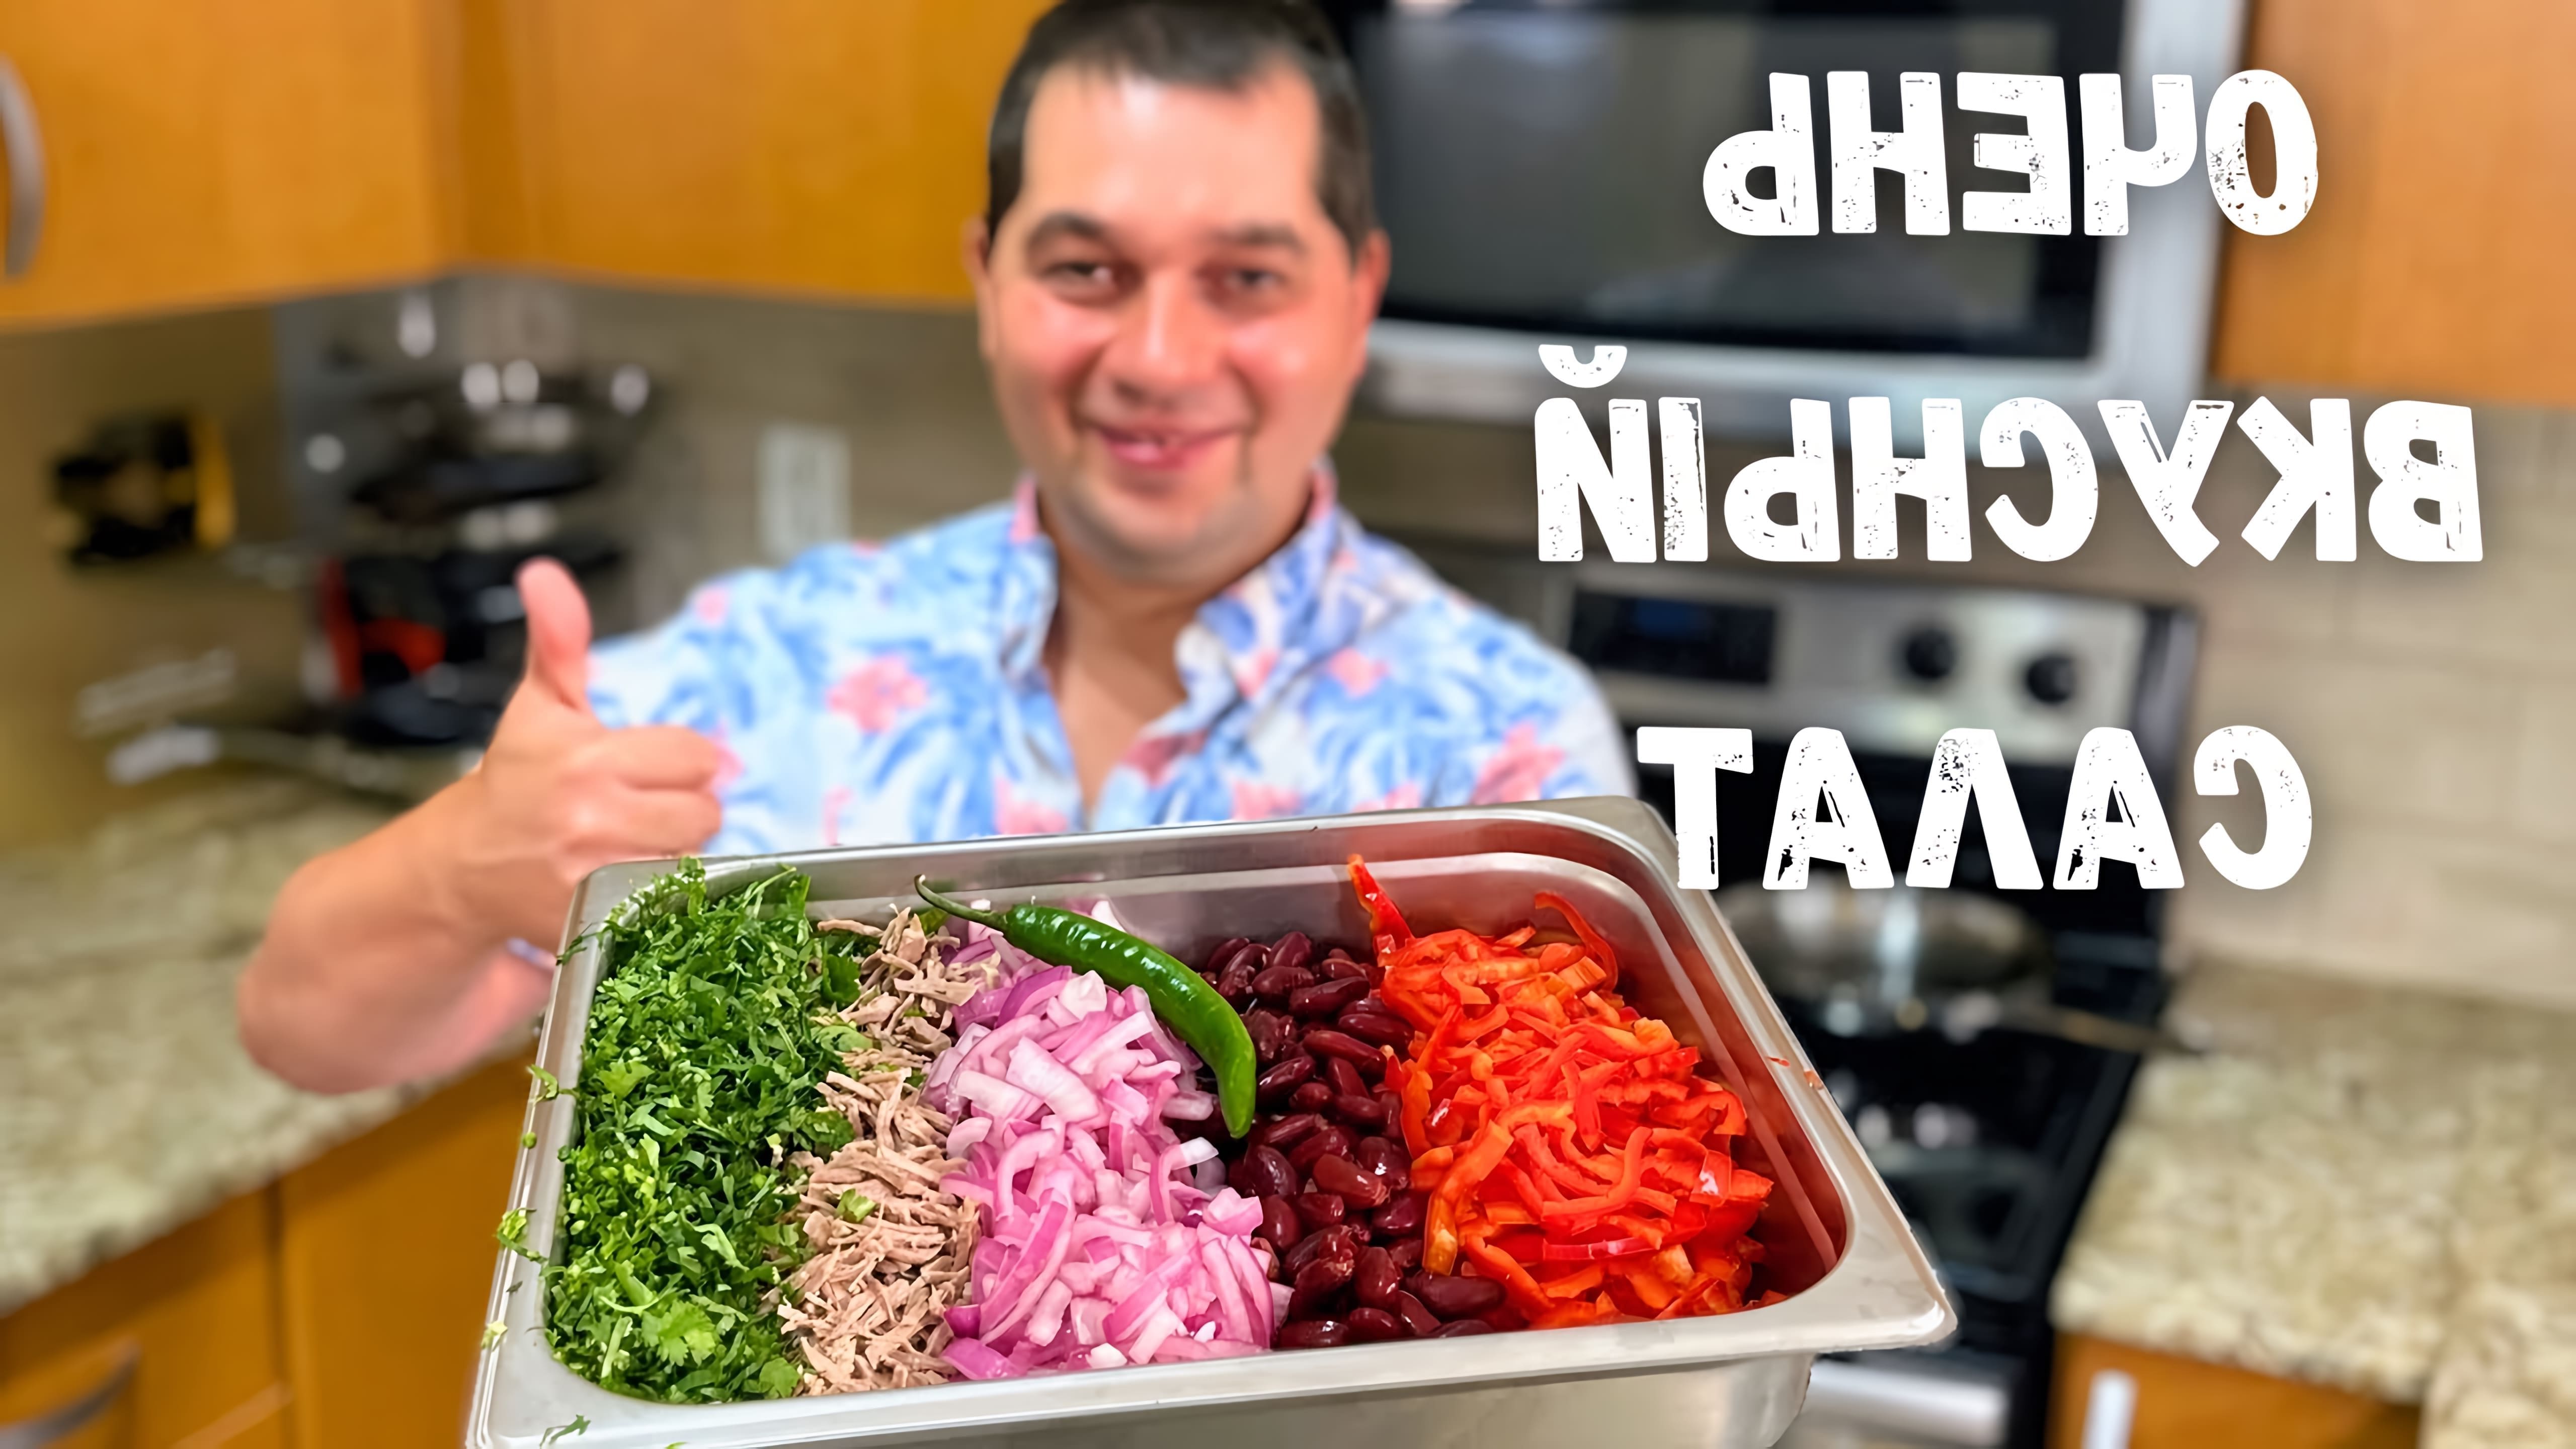 В этом видео представлен рецепт грузинского салата "Тбилиси" с фасолью и мясом